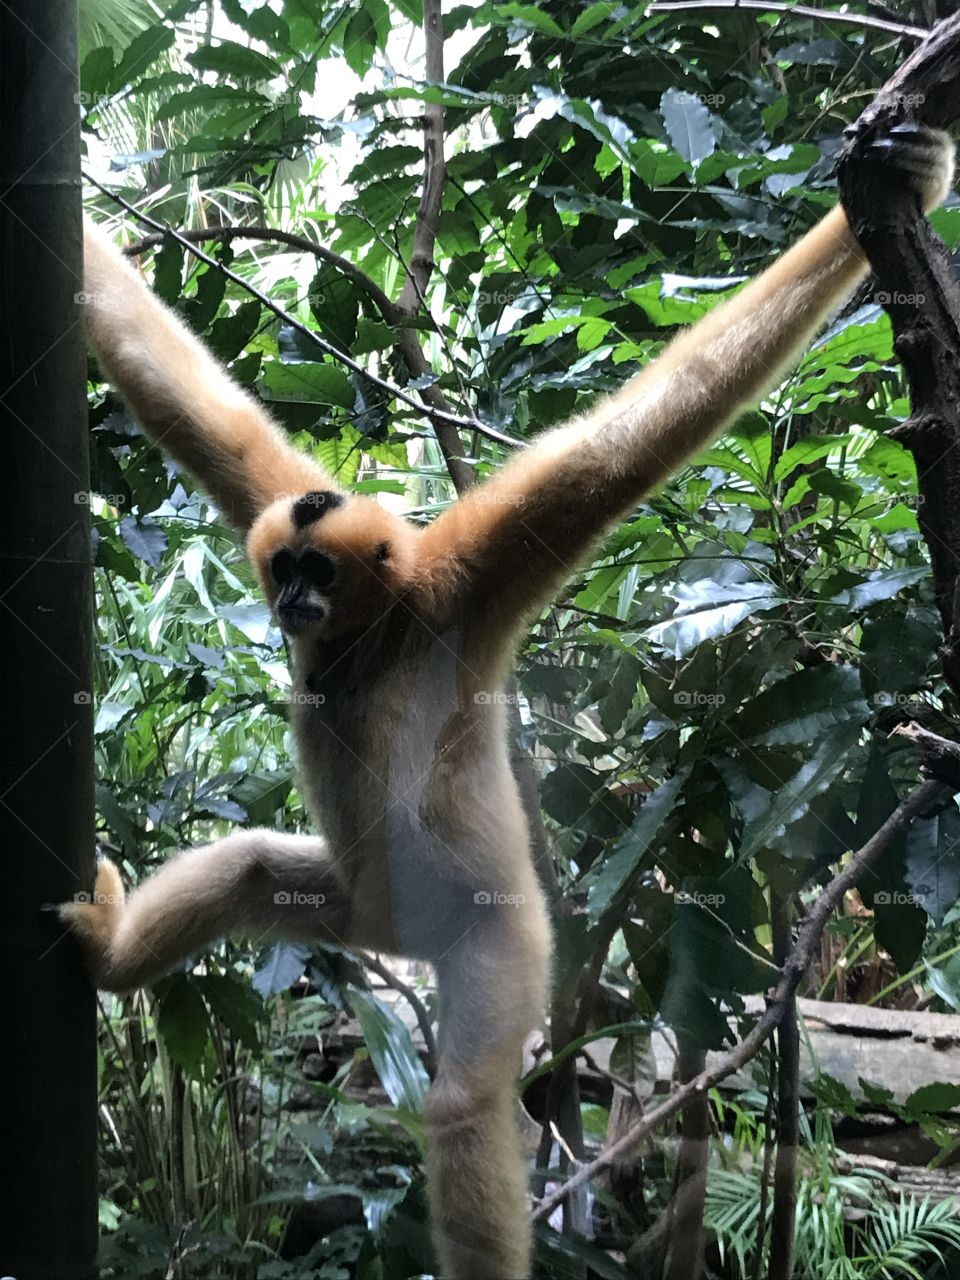 Monkey Pose 